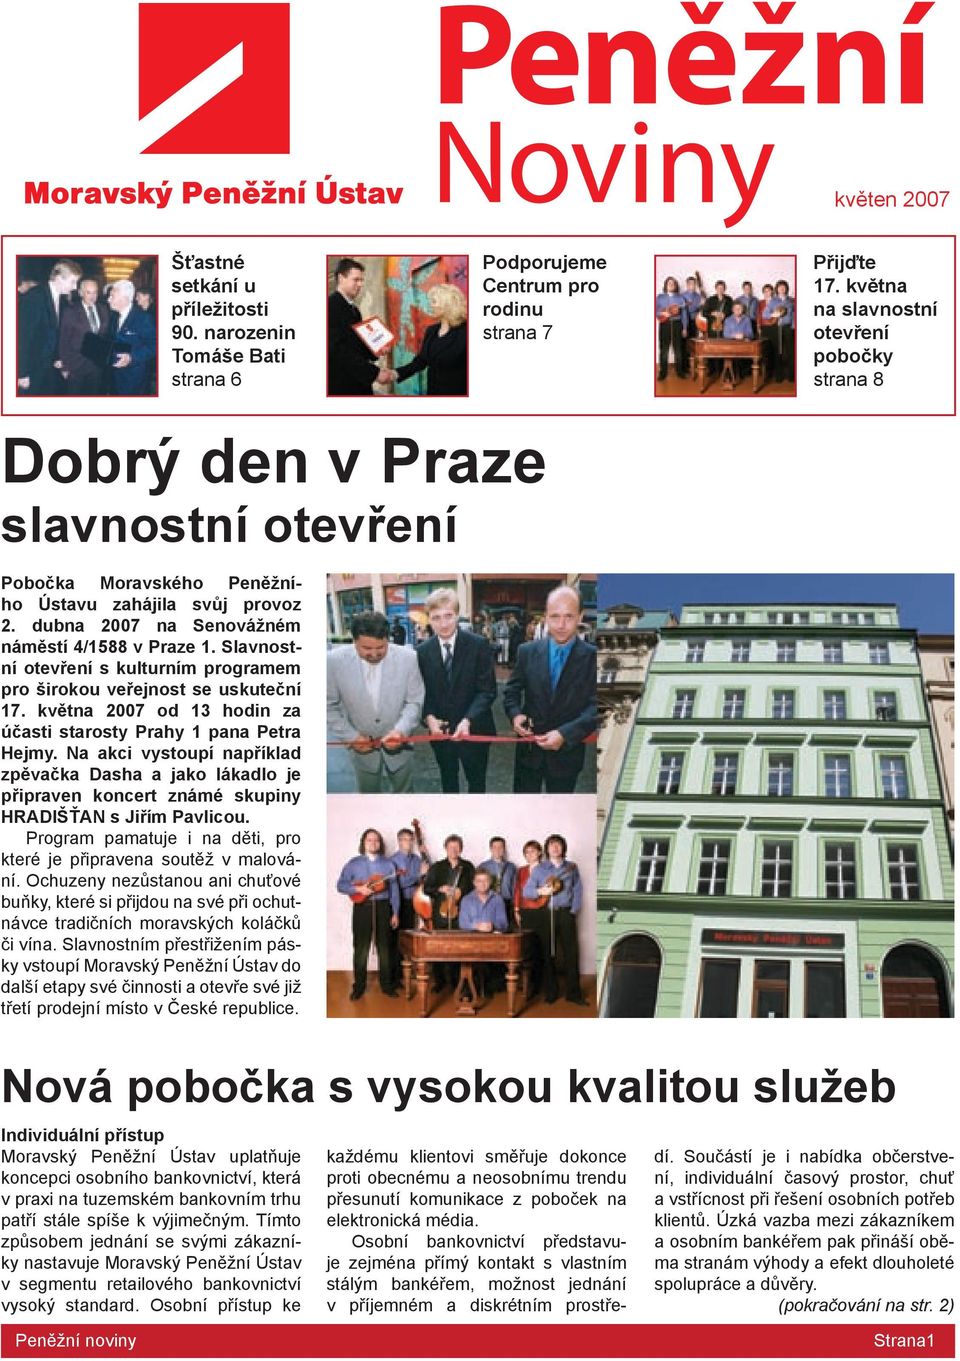 Slavnostní otevření s kulturním programem pro širokou veřejnost se uskuteční 17. května 27 od 13 hodin za účasti starosty Prahy 1 pana Petra Hejmy.